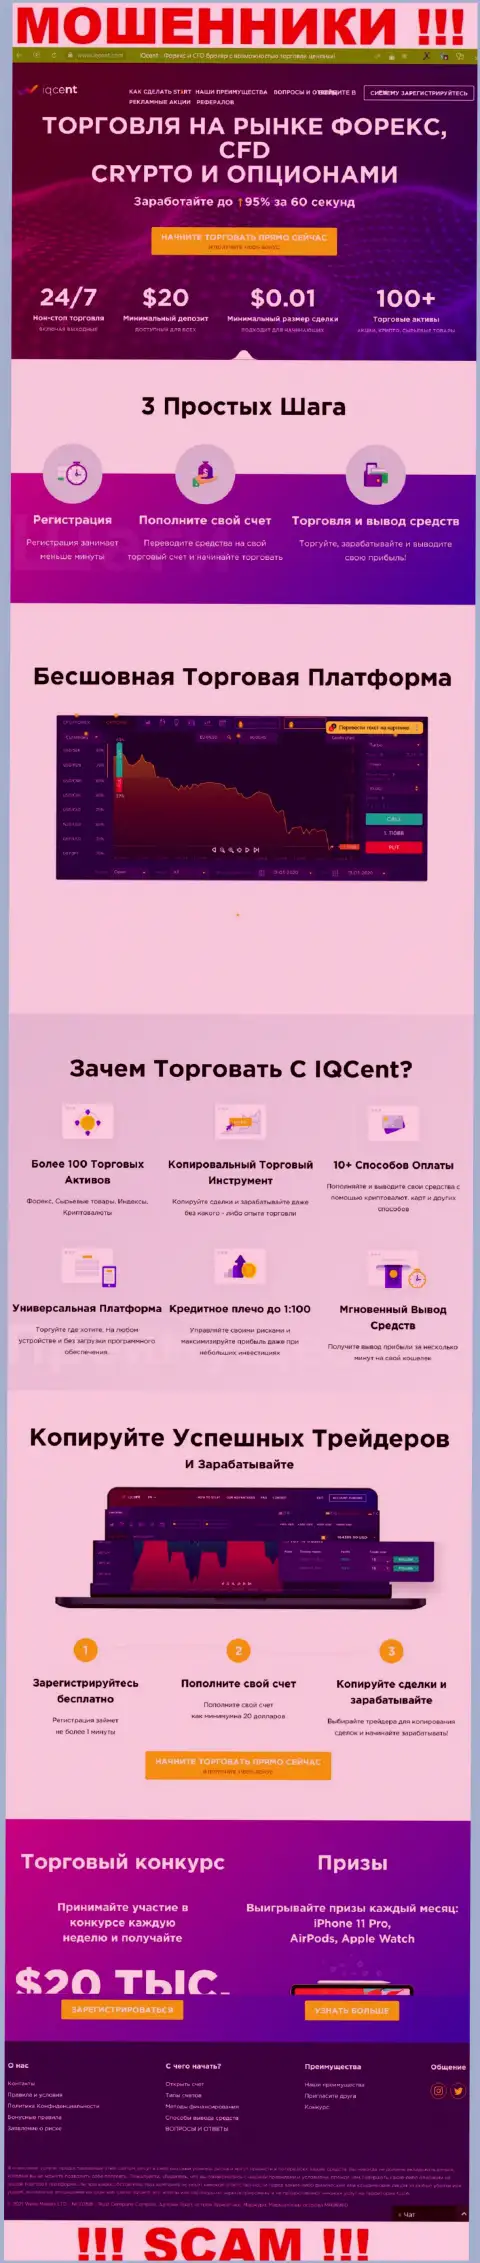 Официальный веб-портал мошенников Ваве Маркетс ЛТД, переполненный материалами для доверчивых людей